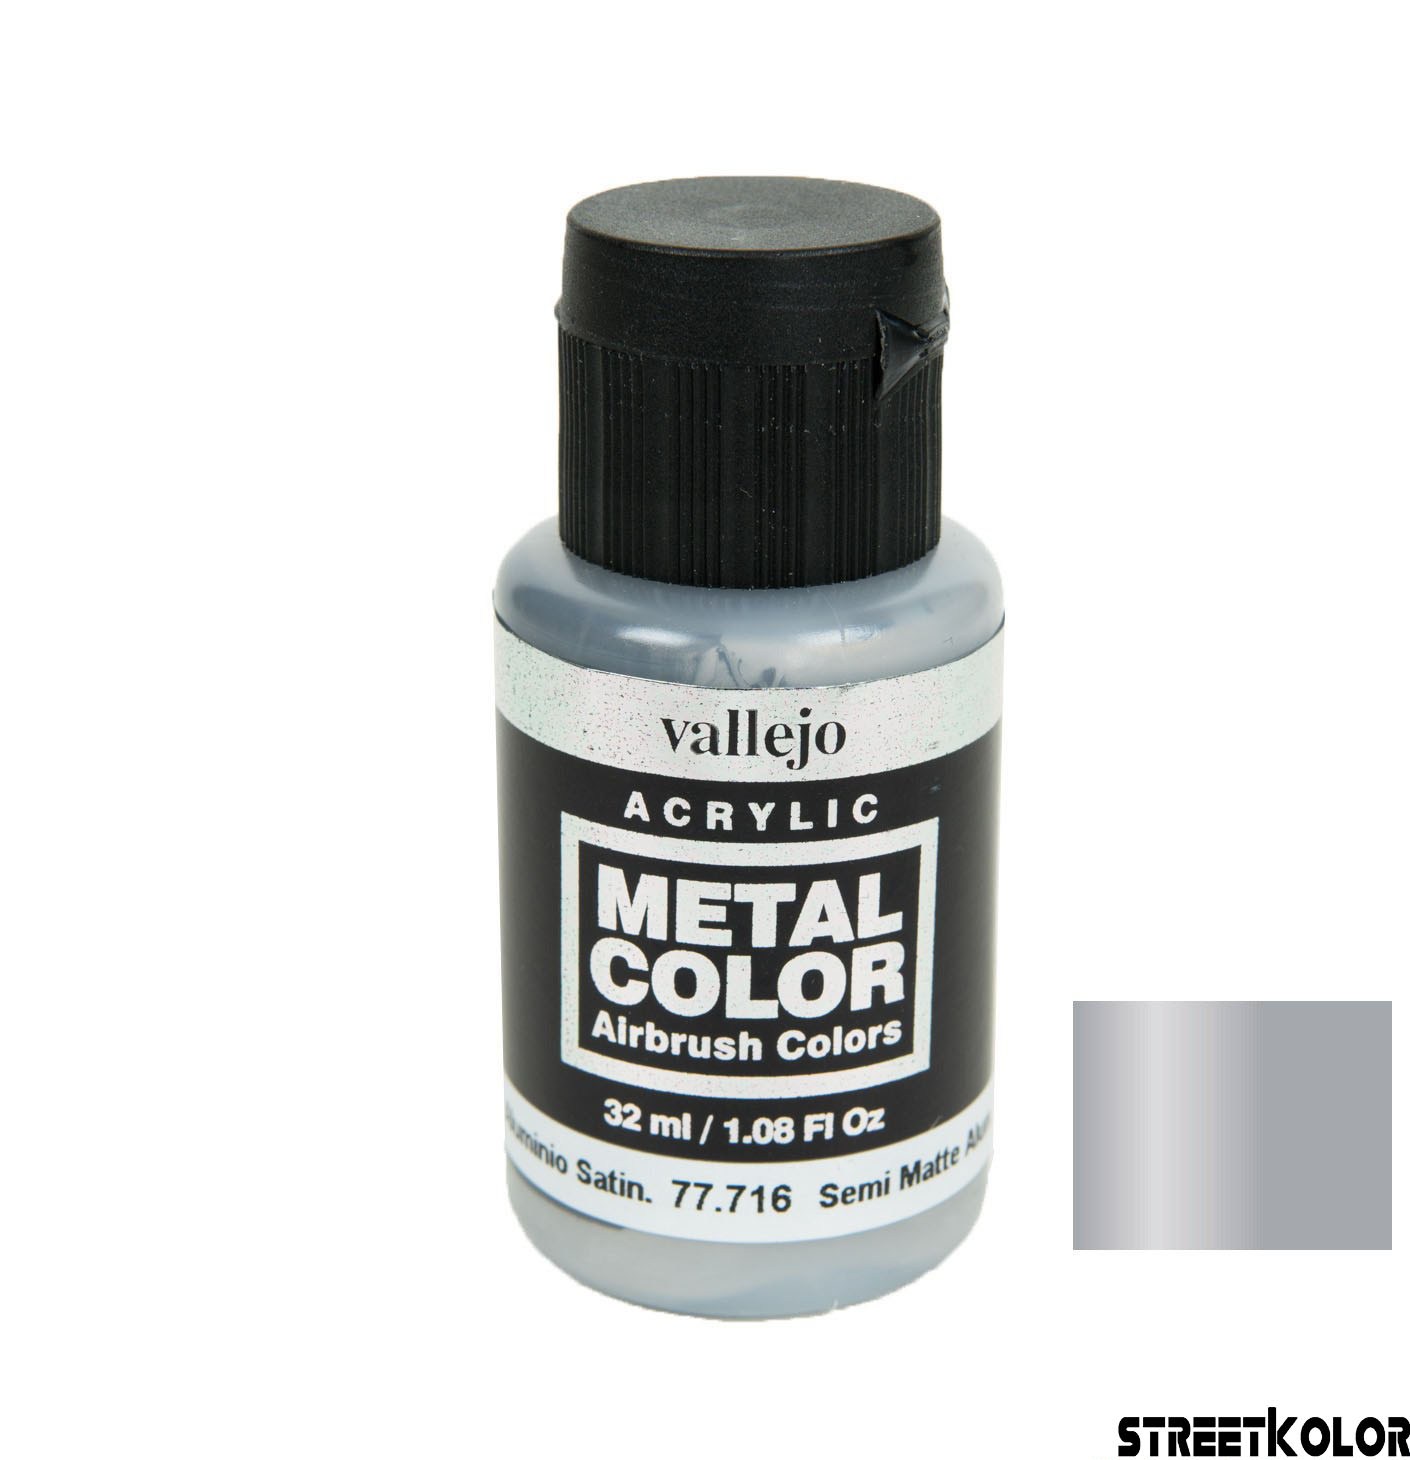 Vallejo 77.716 Félmatt alumínium metálfényű AirBrush festék 32 ml